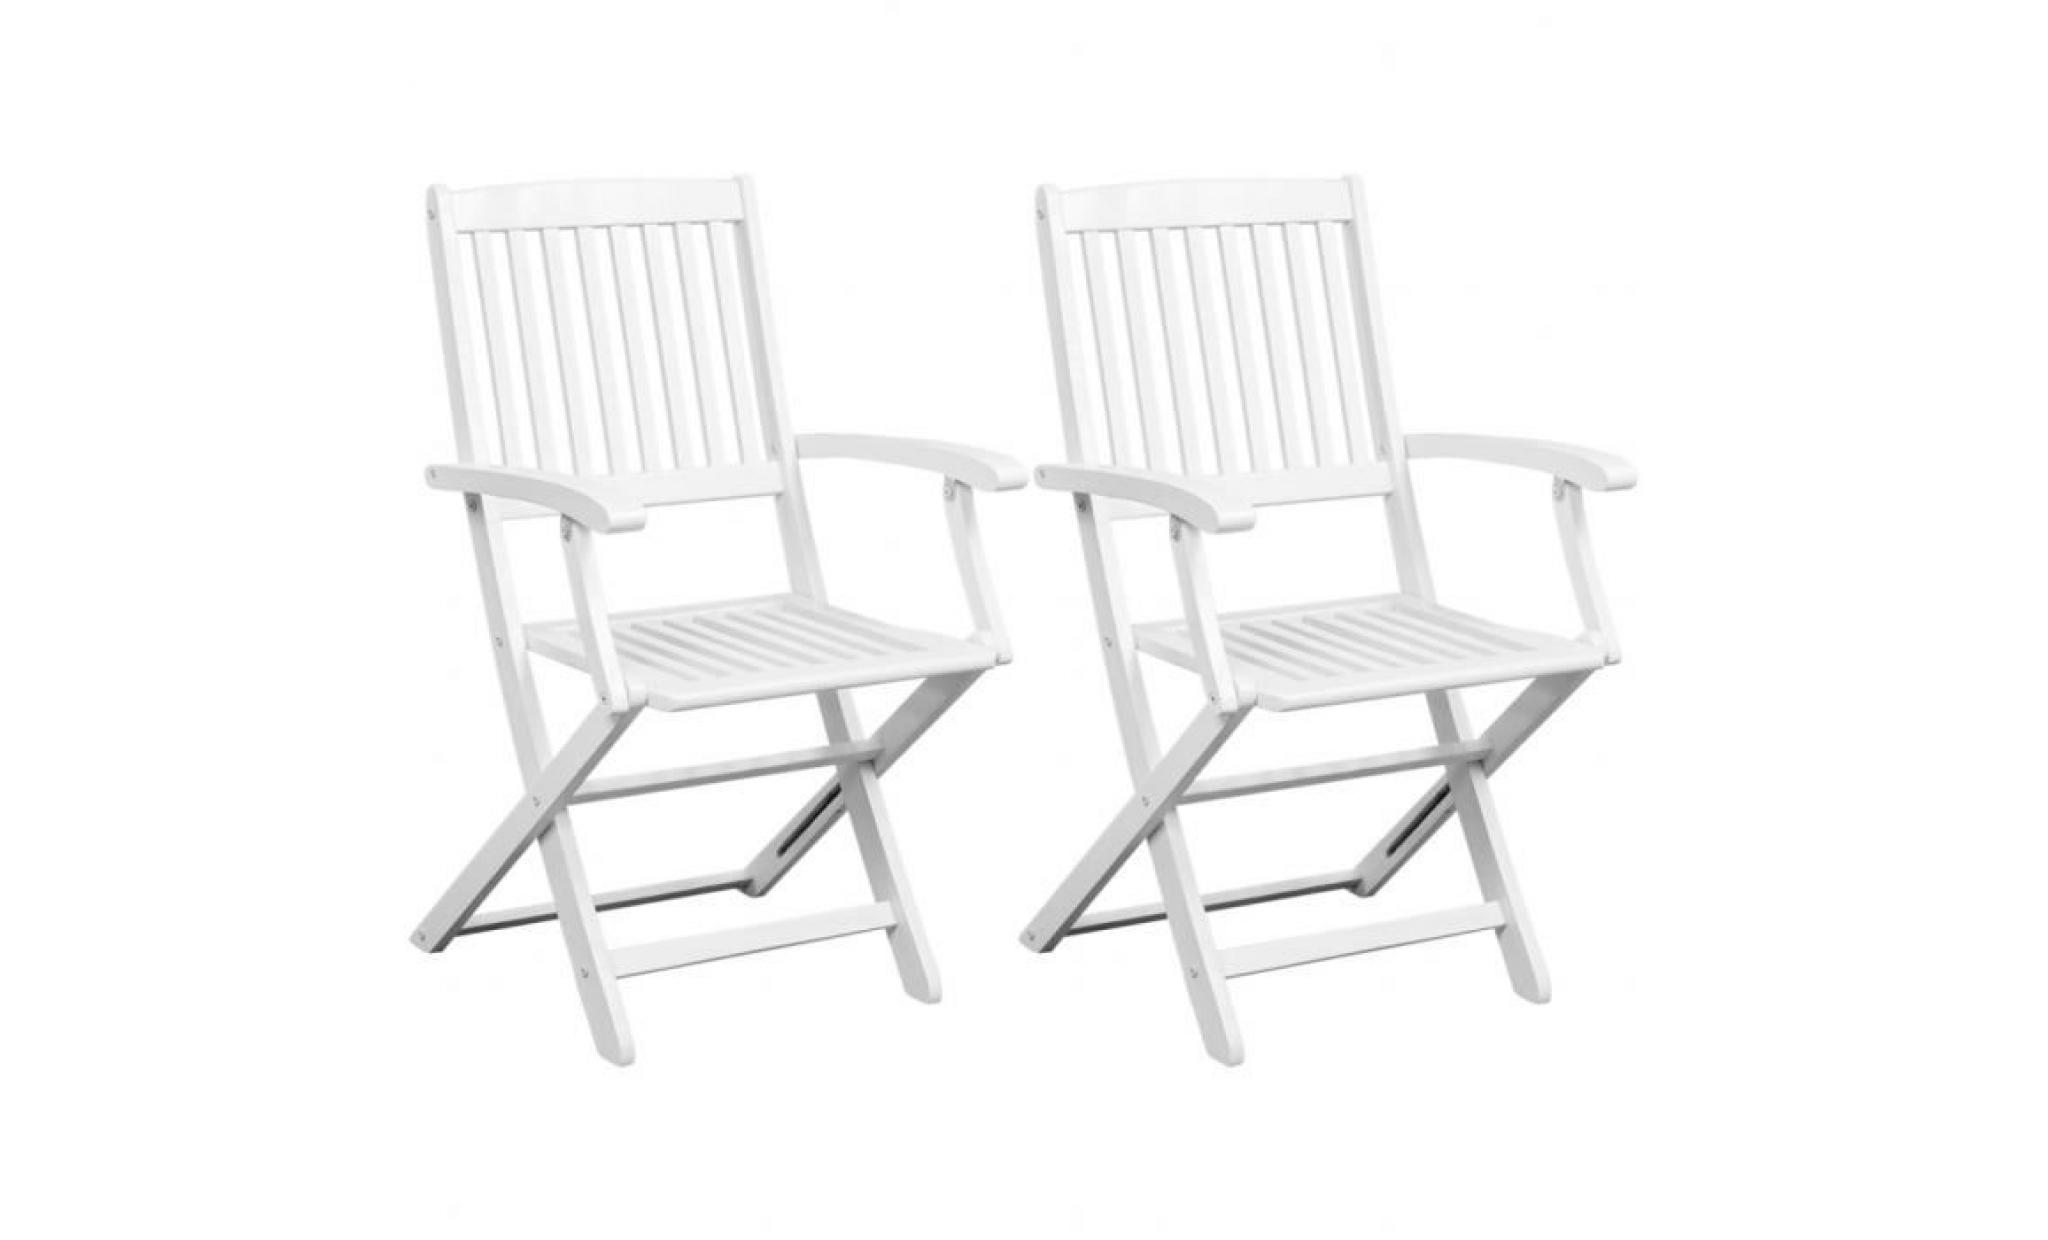 2pcs chaises pliantes en bois d'acacia blanc design élégant pour jardin terrasse ou patio 51 x 56 x 92 cm